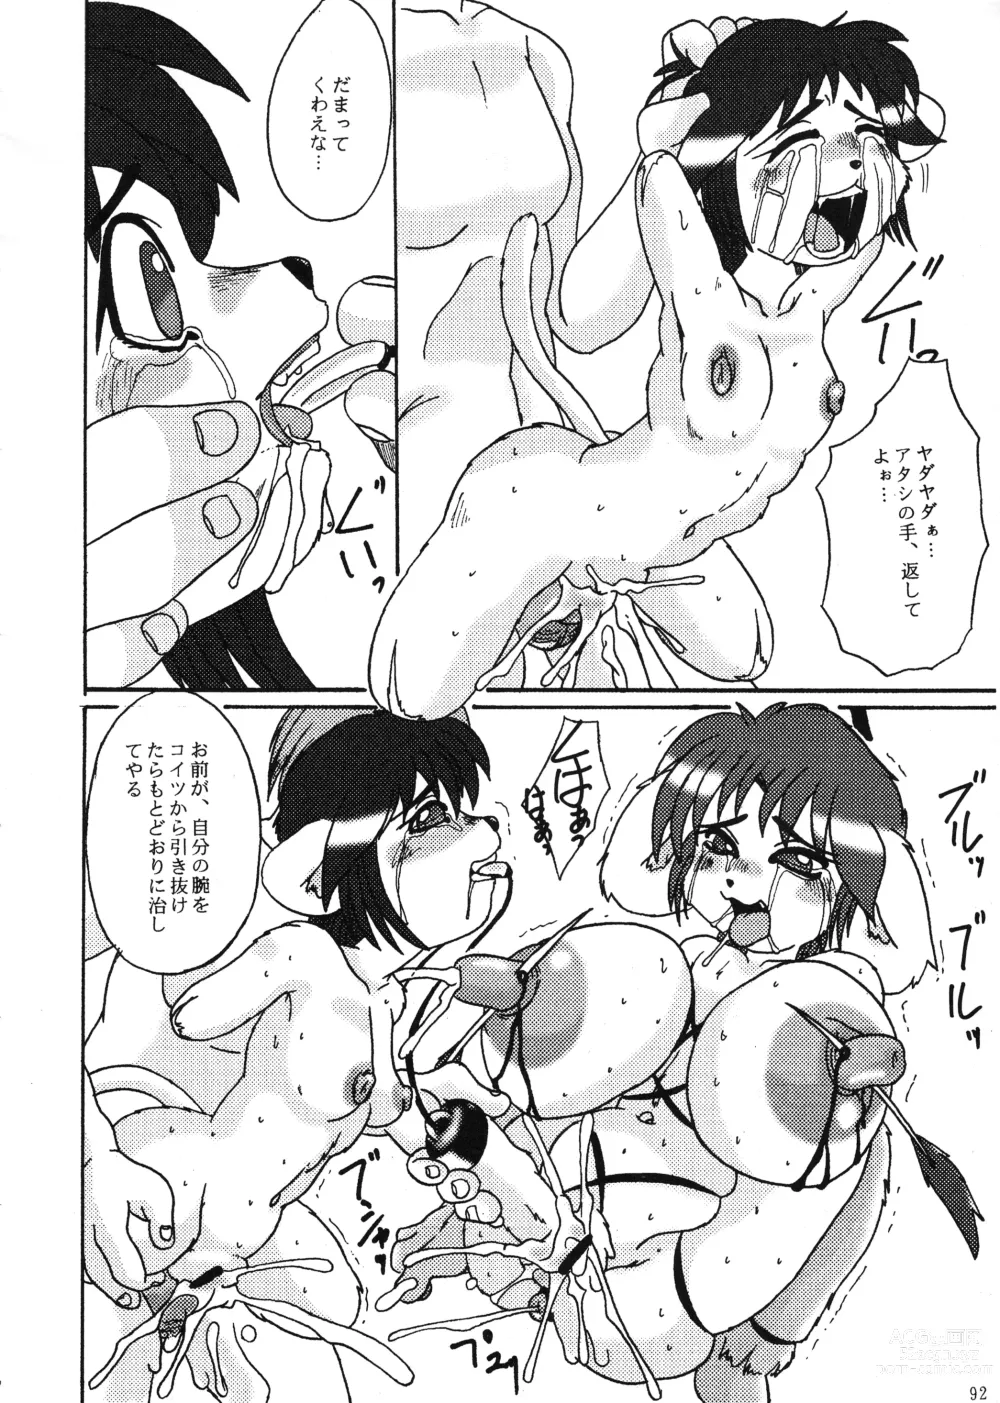 Page 92 of doujinshi Kyoujyuu